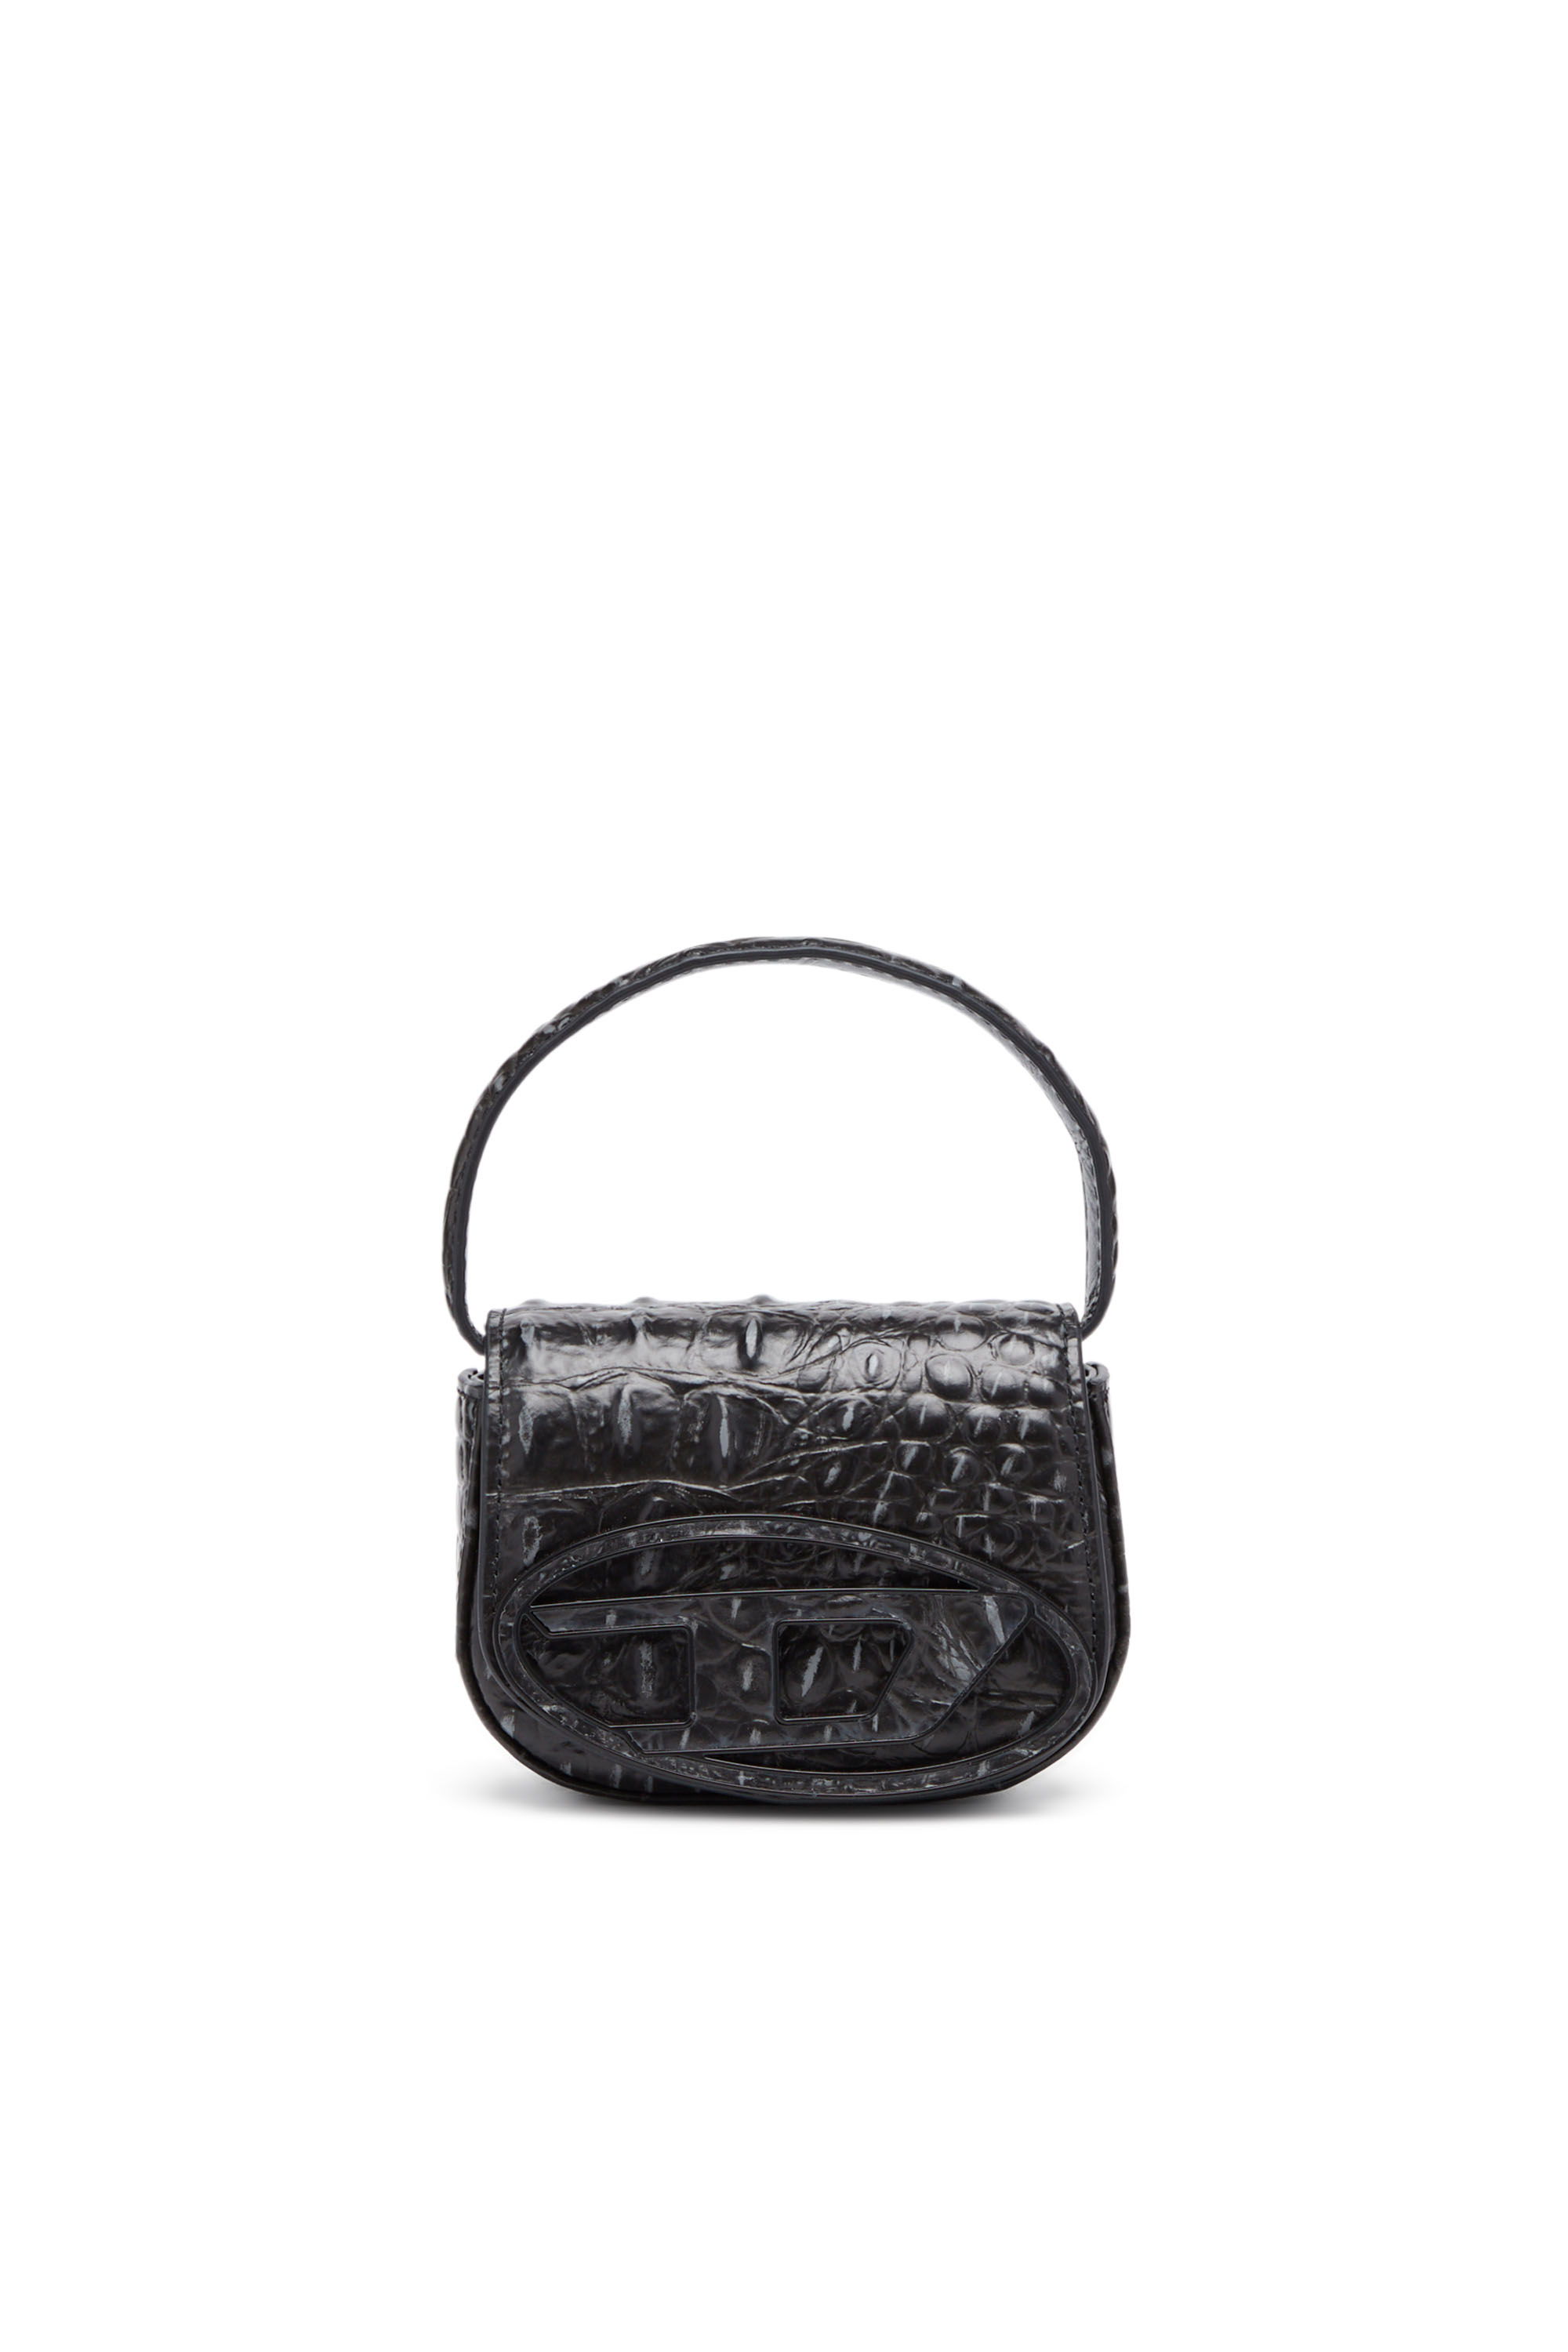 Diesel - 1DR XS - Mini sac iconique en cuir imprimé croco - Sacs en bandoulière - Femme - Noir